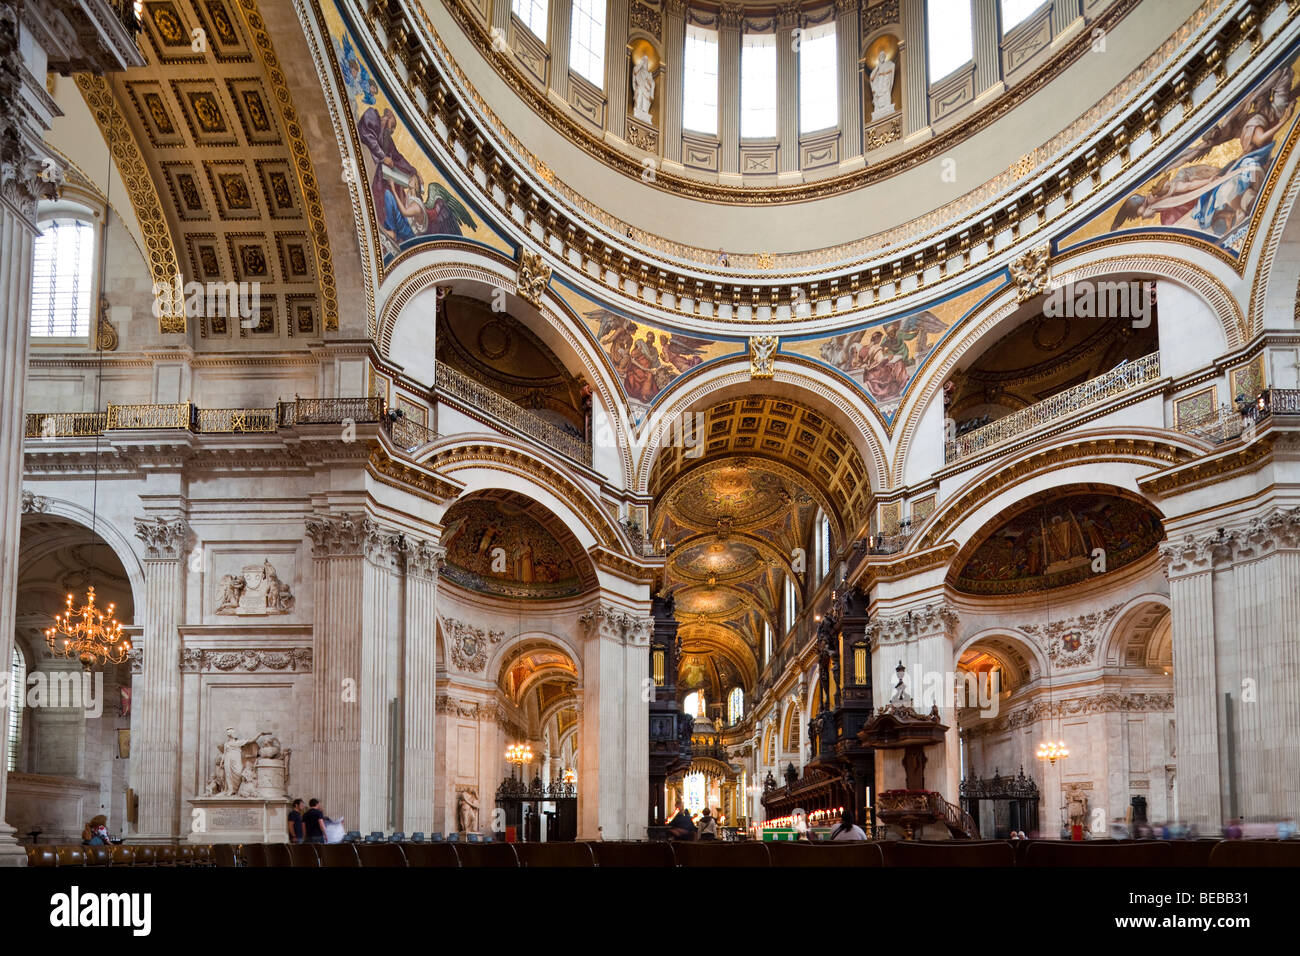 L'intérieur, la cathédrale St Paul, London, England, UK Banque D'Images